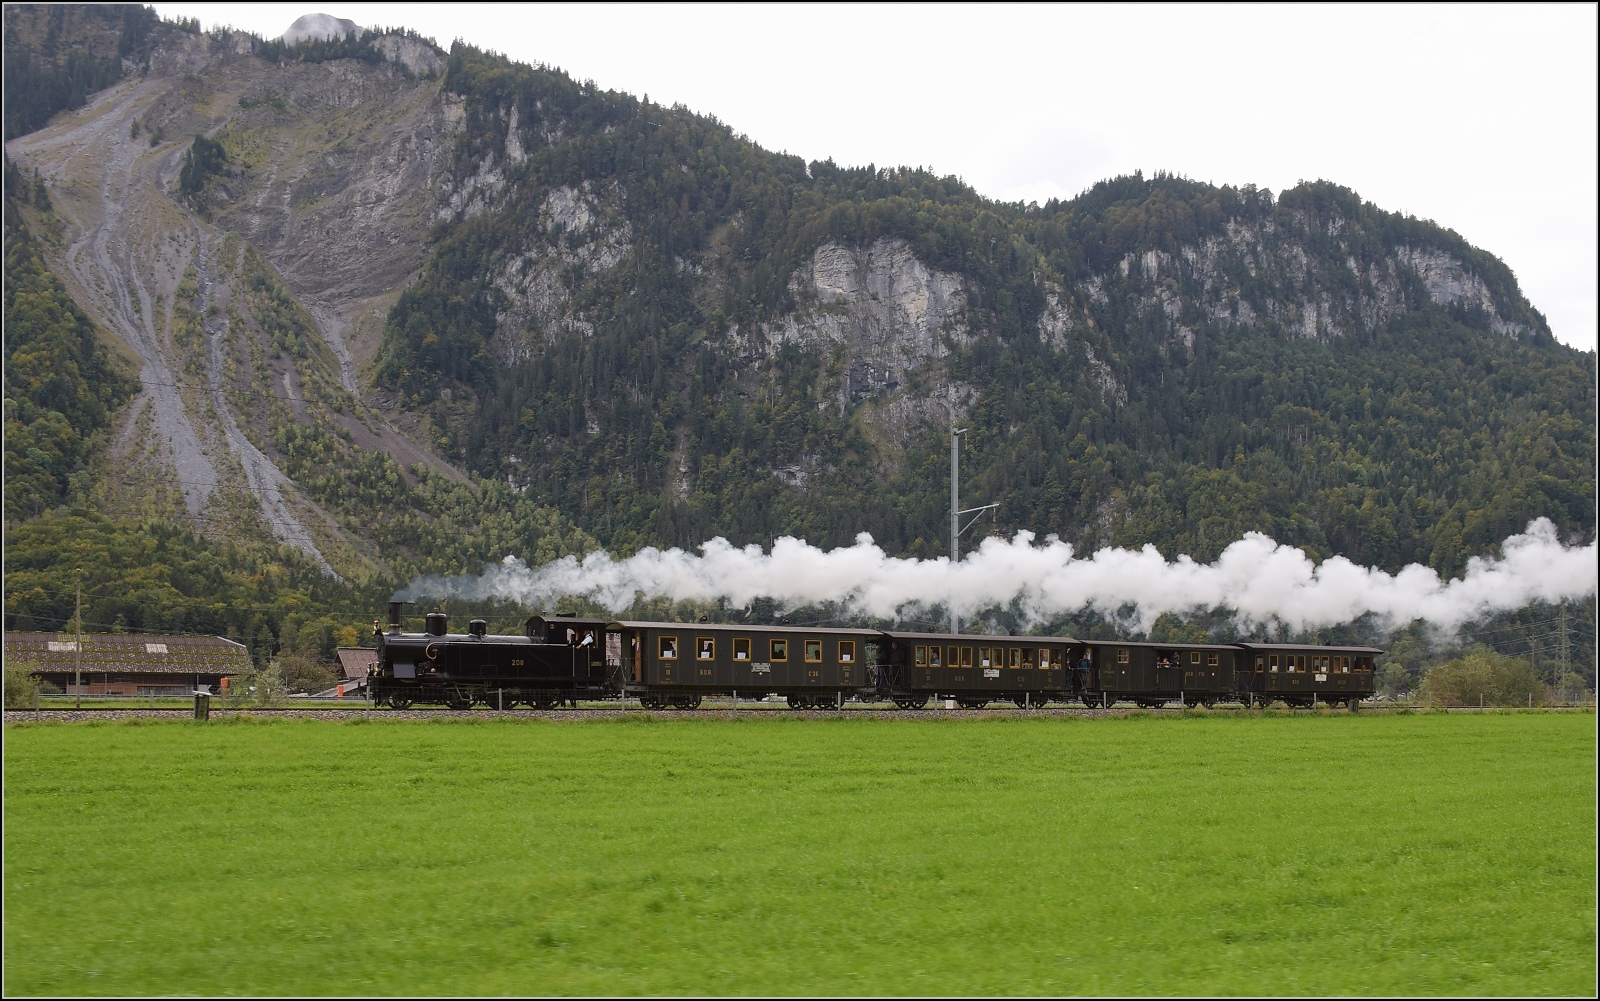 Ballenberg Dampfbahn nach Innertkirchen.

G 3/4 208 entlang der Aare durch das Haslital mit dem Ballenberg im Nacken des Fotografen. Oktober 2019. 